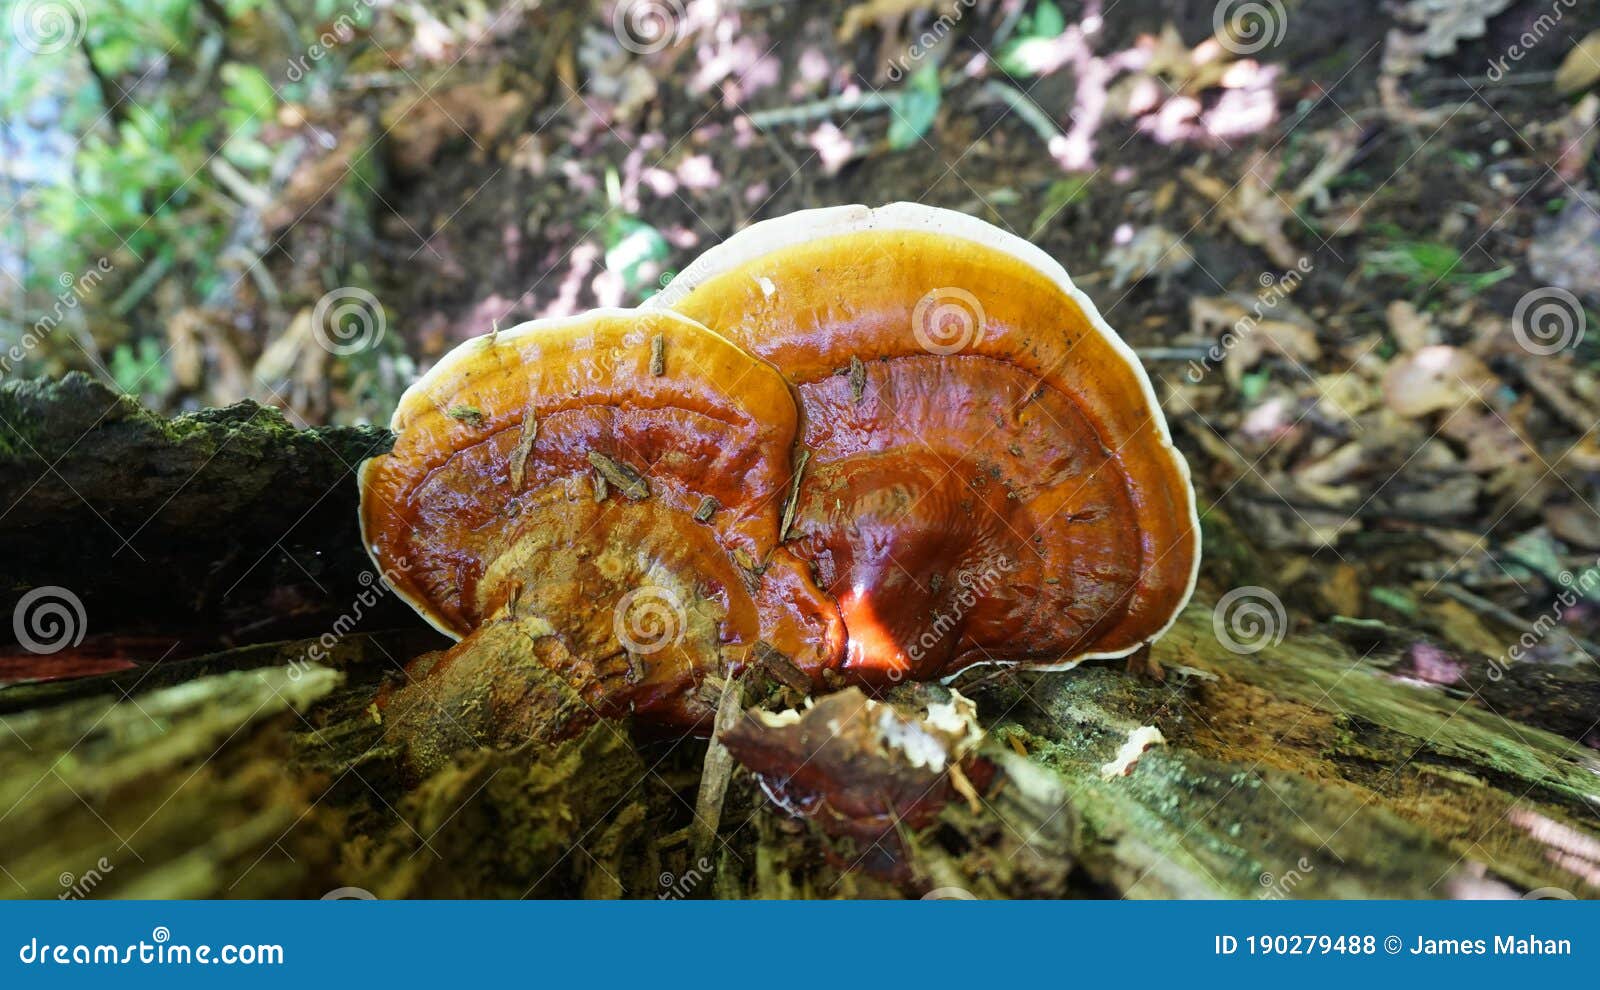 reishi ganoderma tsugae growing in the forest. popular mushroom in herbalism.